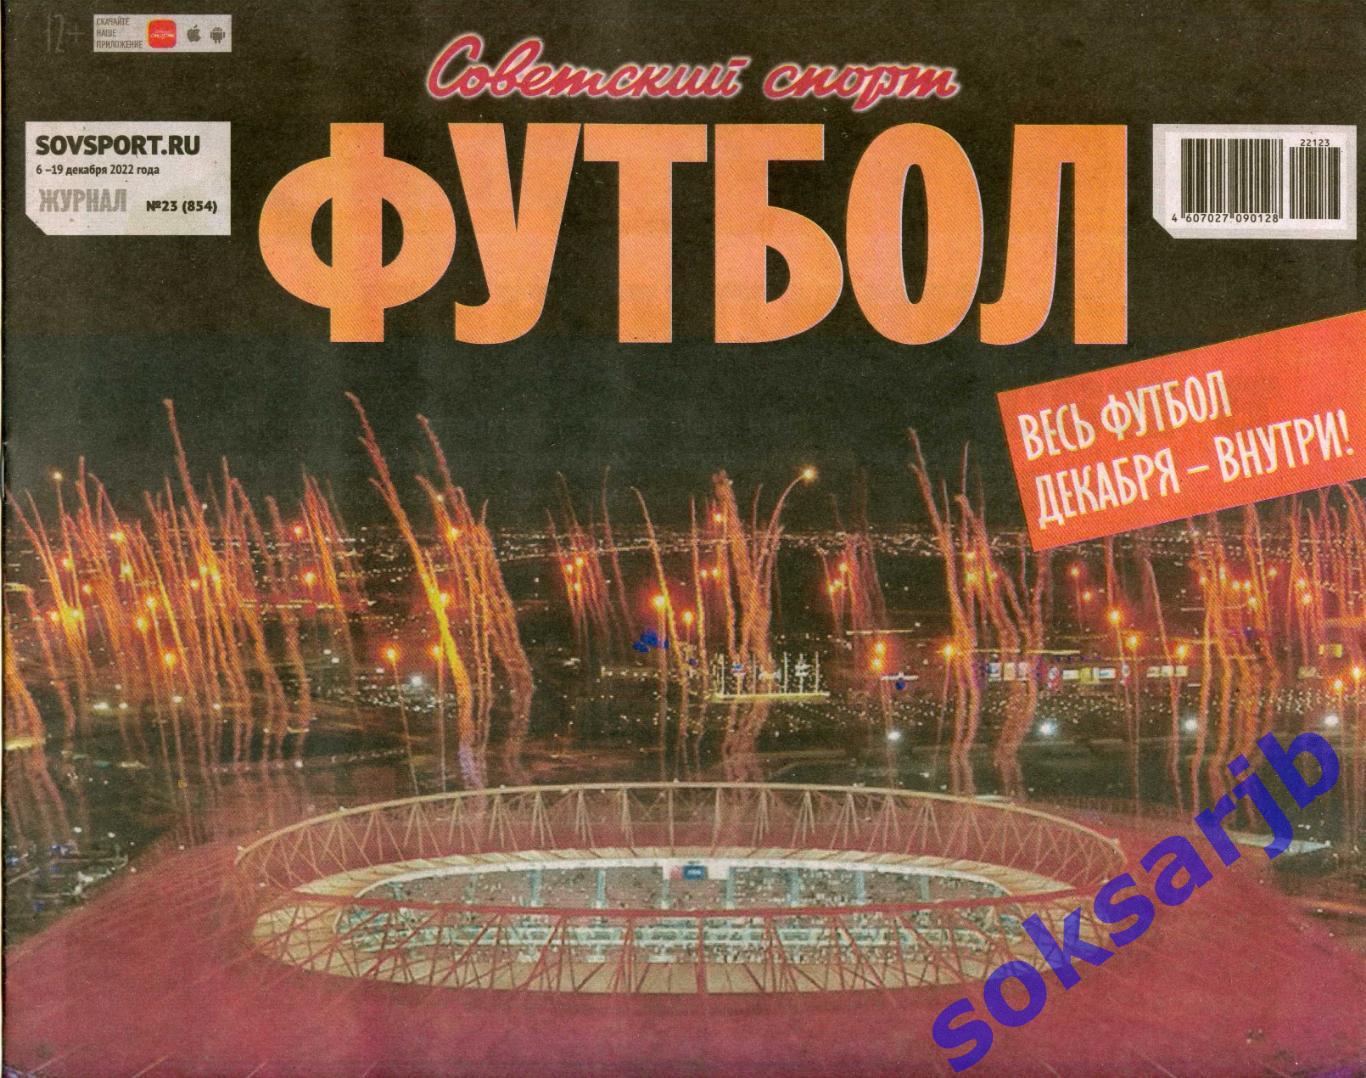 2022. Еженедельник Советский спорт - Футбол № 23 (854).